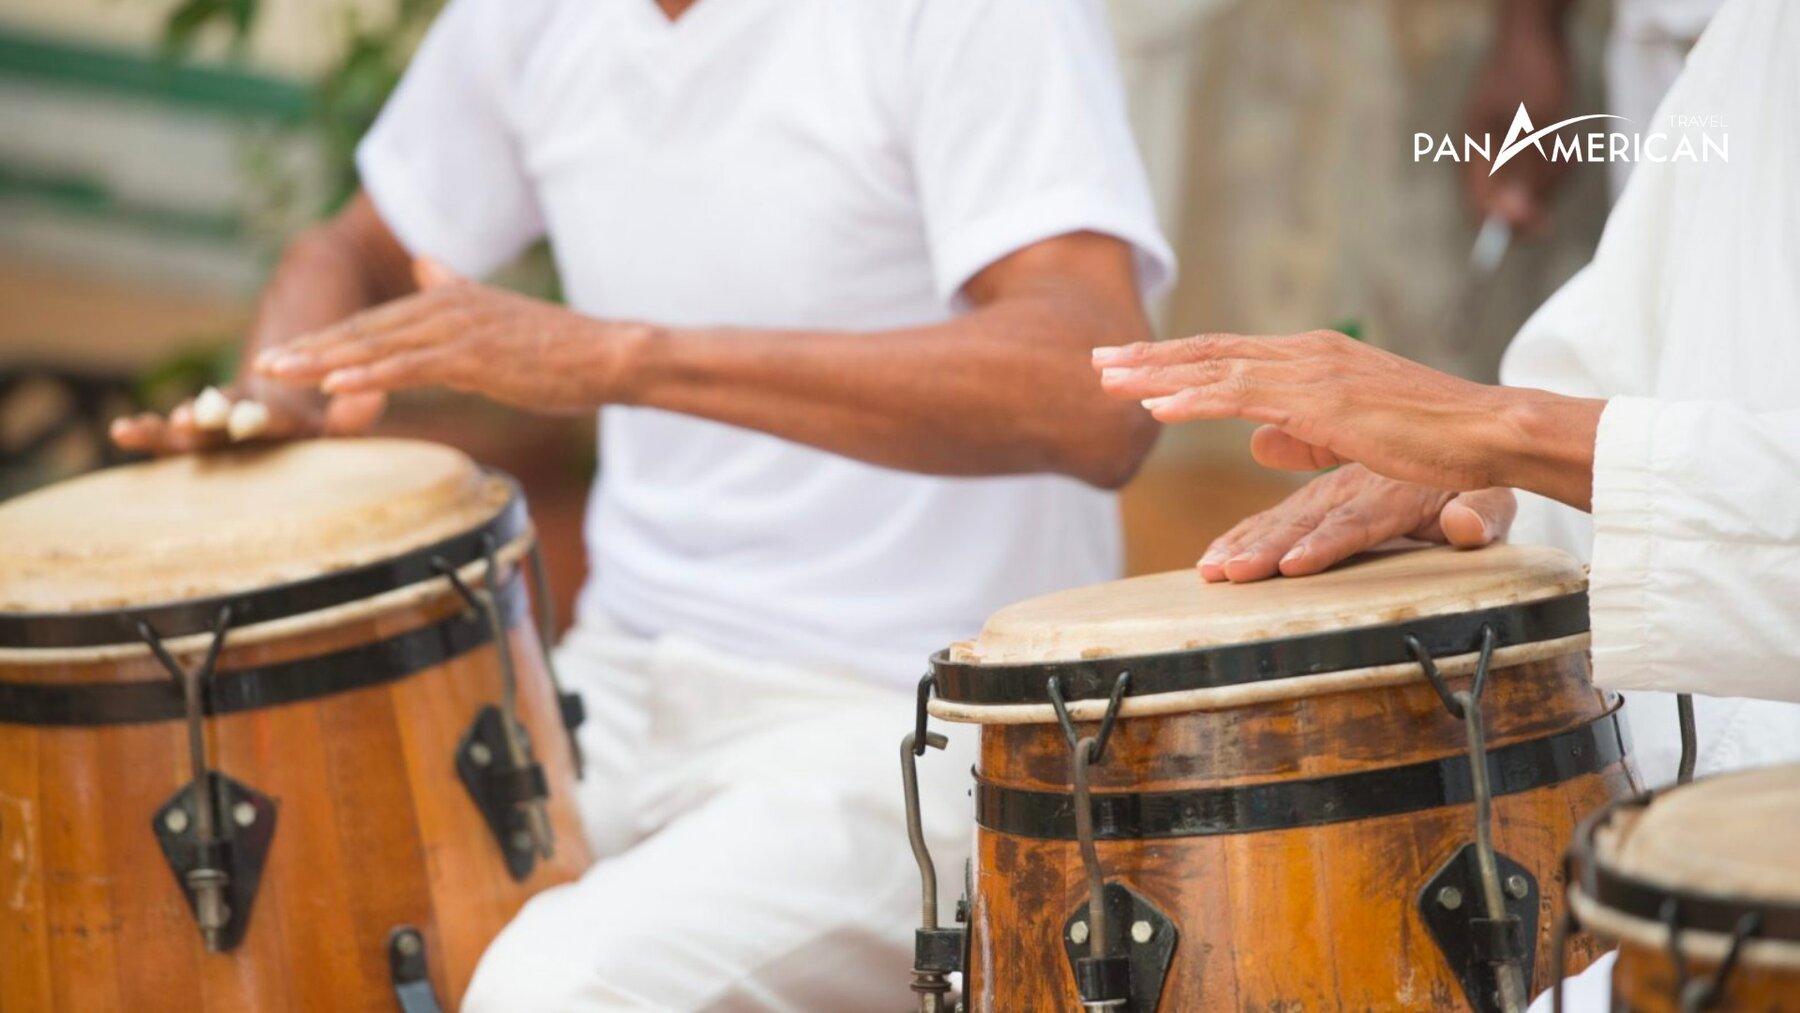 Âm nhạc quan trọng với người Cuba